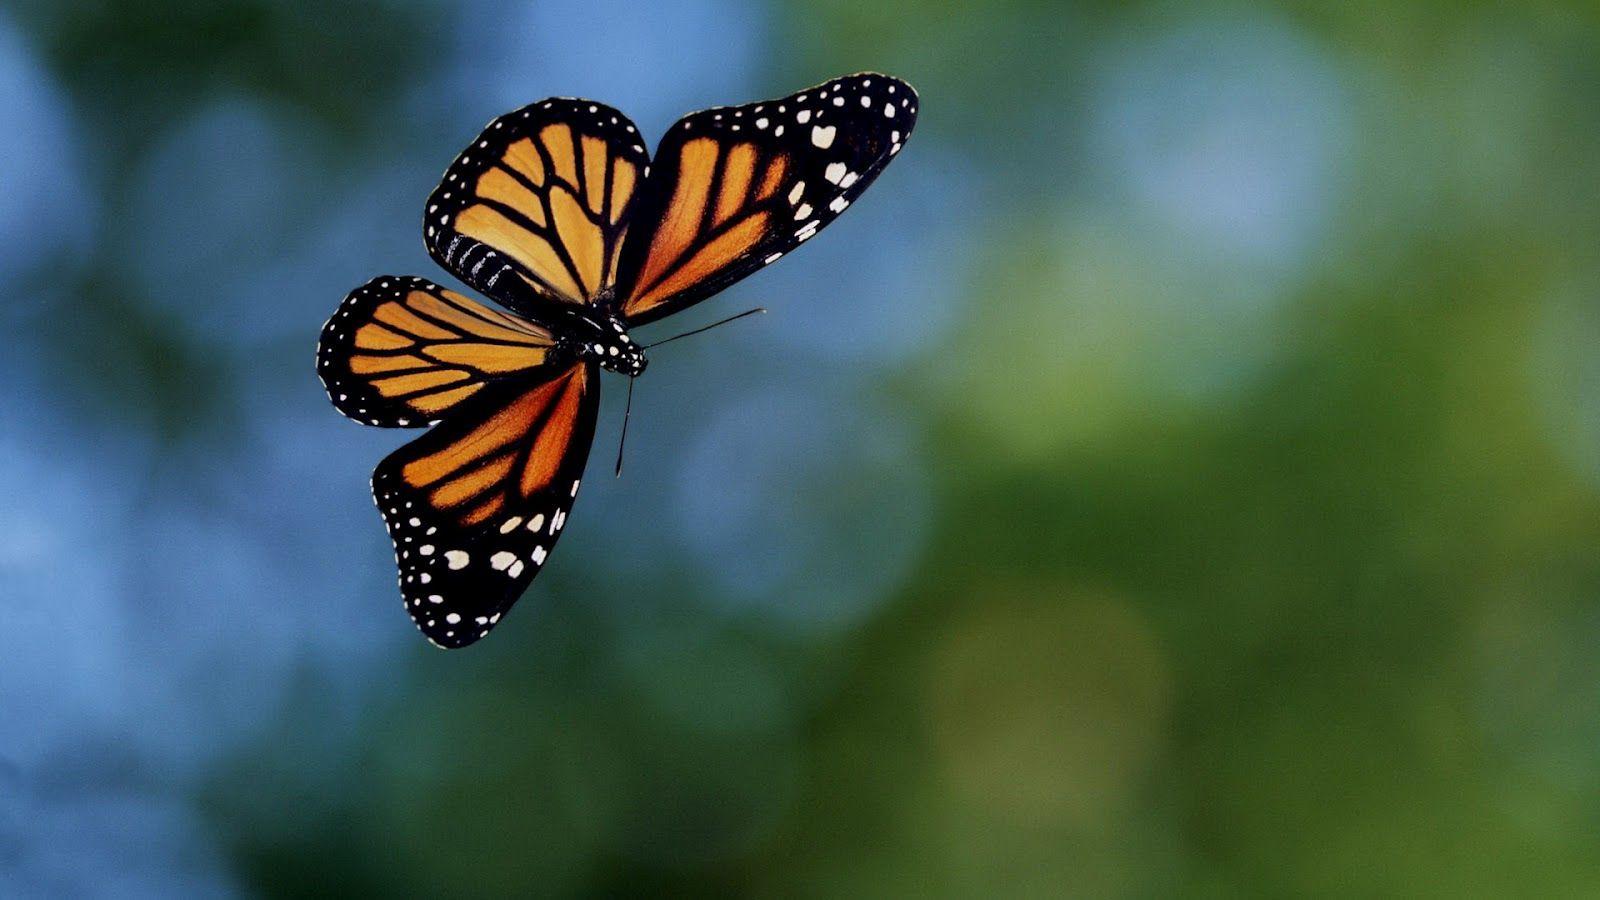 1600x900 Hình nền bướm bay màu cam đen.  Hình nền động vật HD